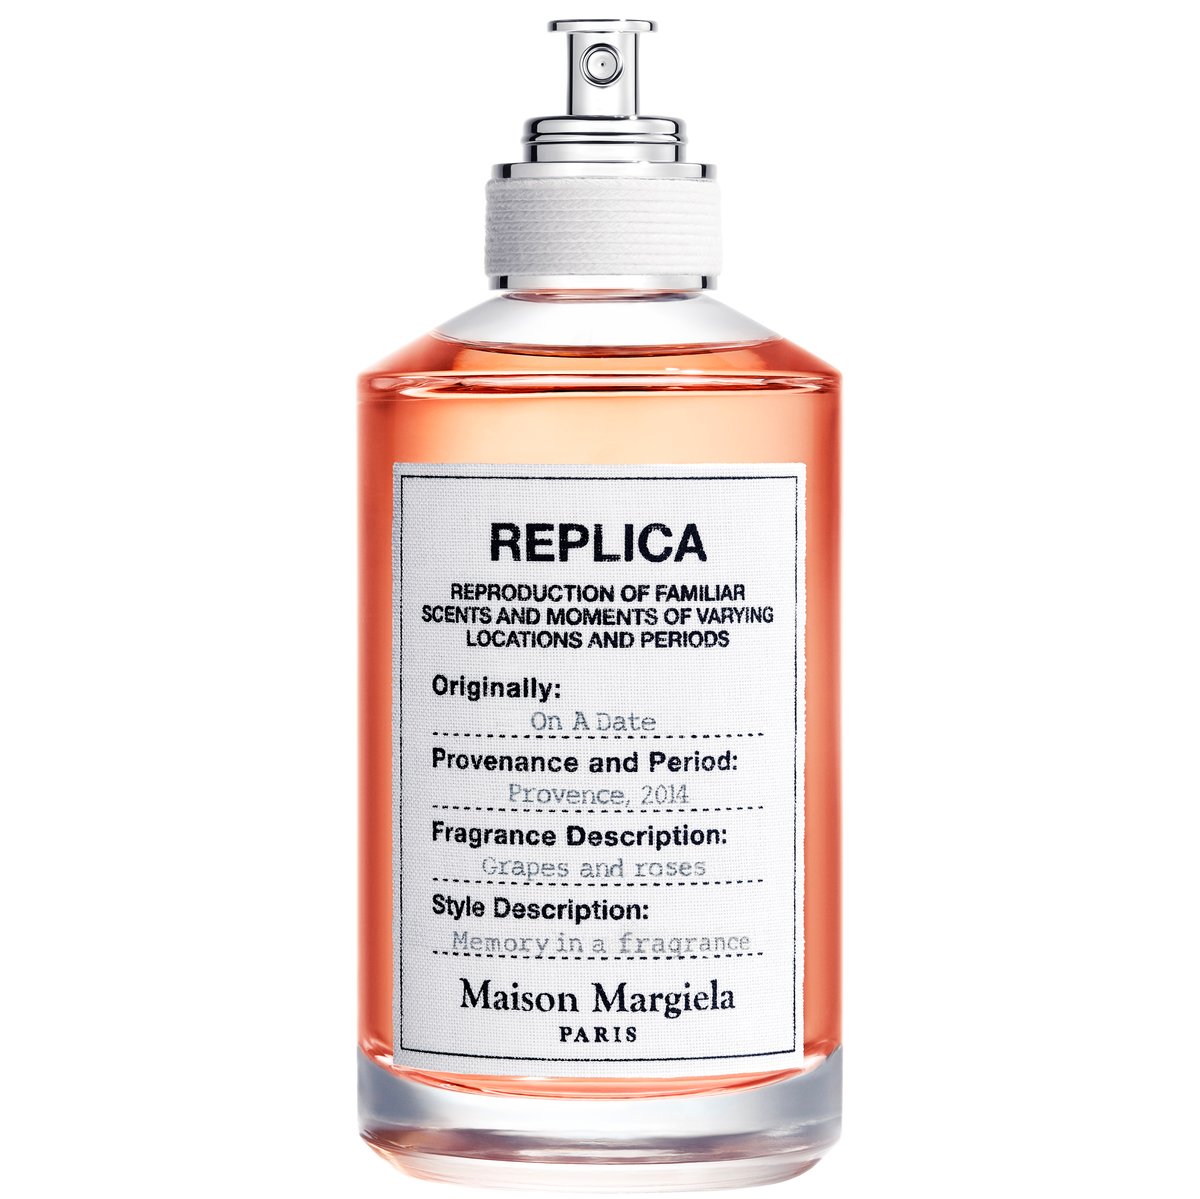 REPLICAと刻印されたオレンジ色の香水